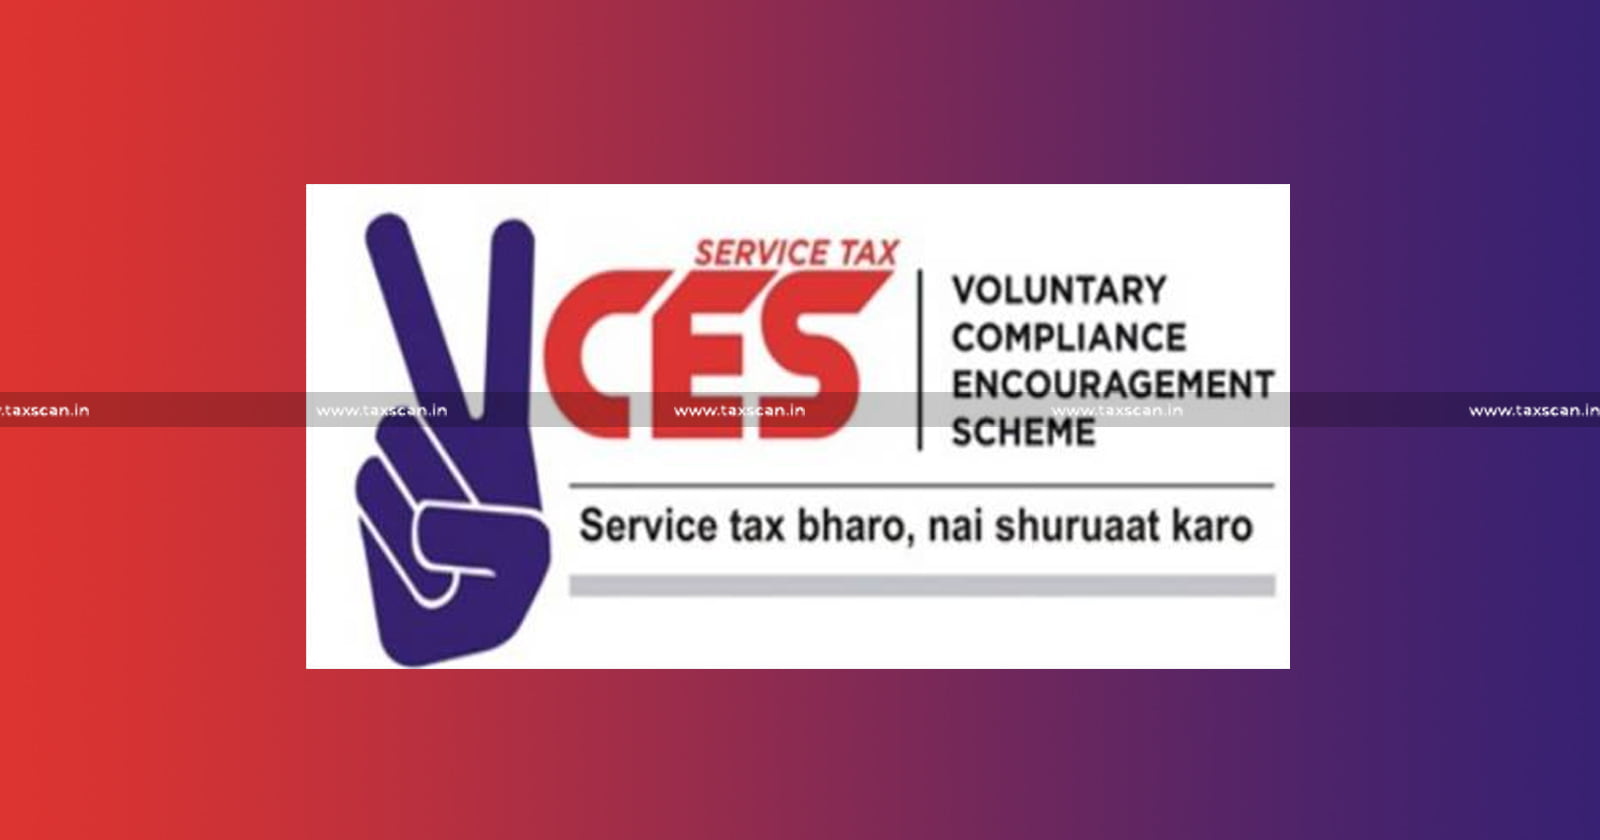 Audit Reports - Audit Report - Order - filing VCES Declaration - VCES Declaration - CESTAT - Customs - Excise - Service Tax - Taxscan